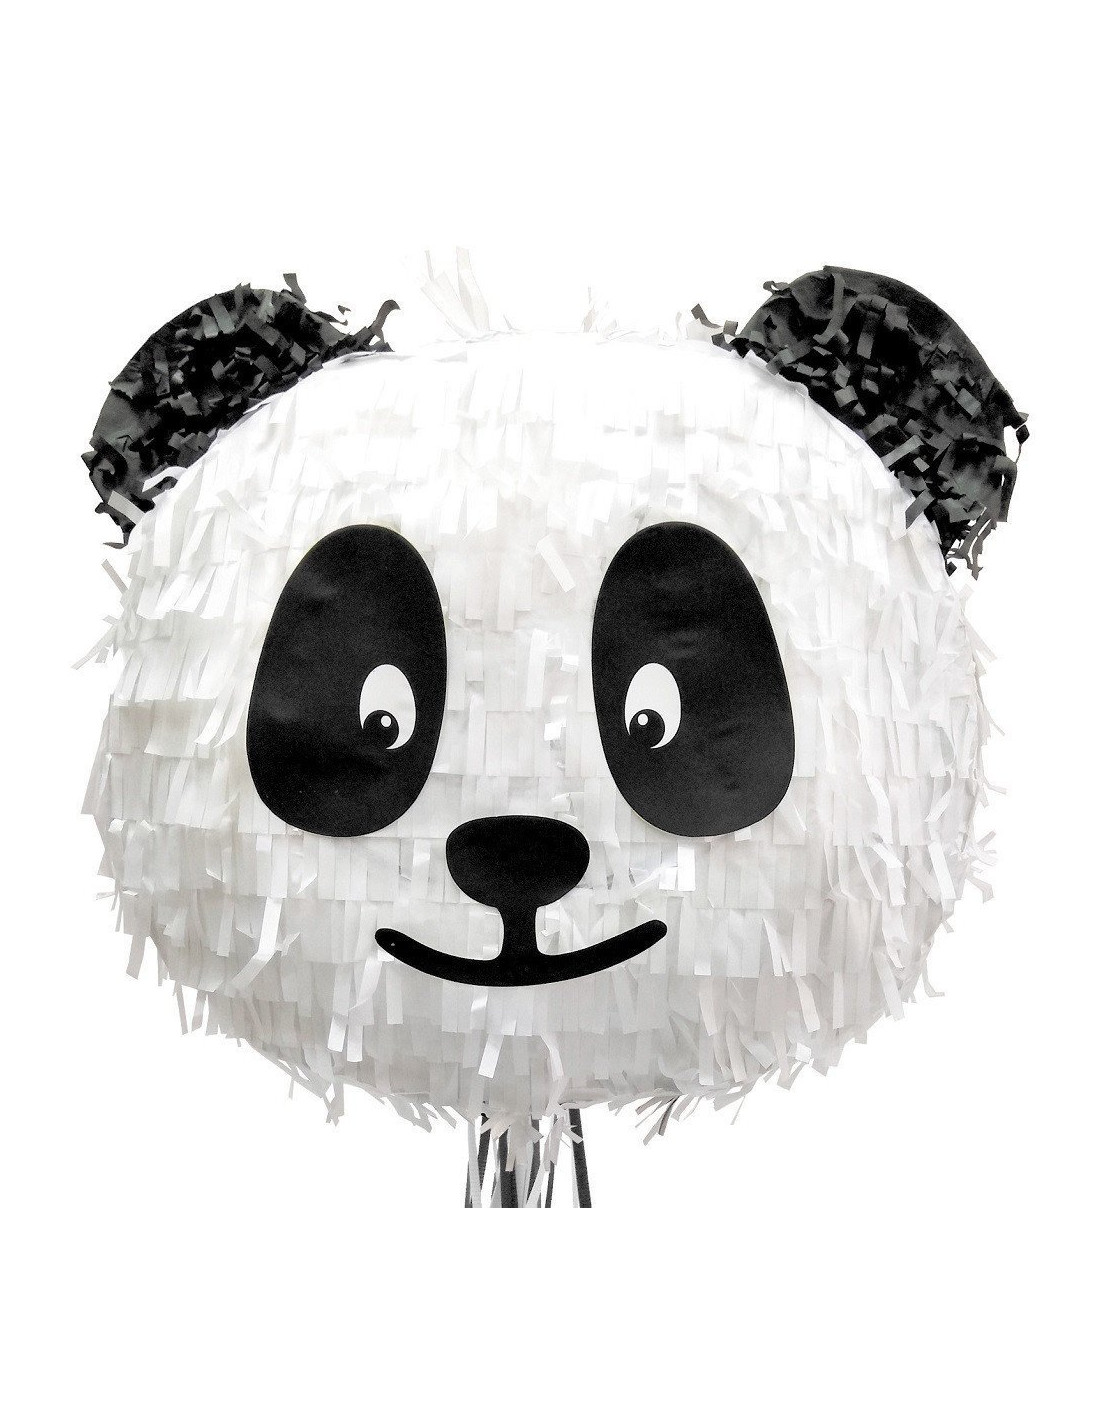 25 Pochettes Cadeaux en Papier Panda - Les Bambetises